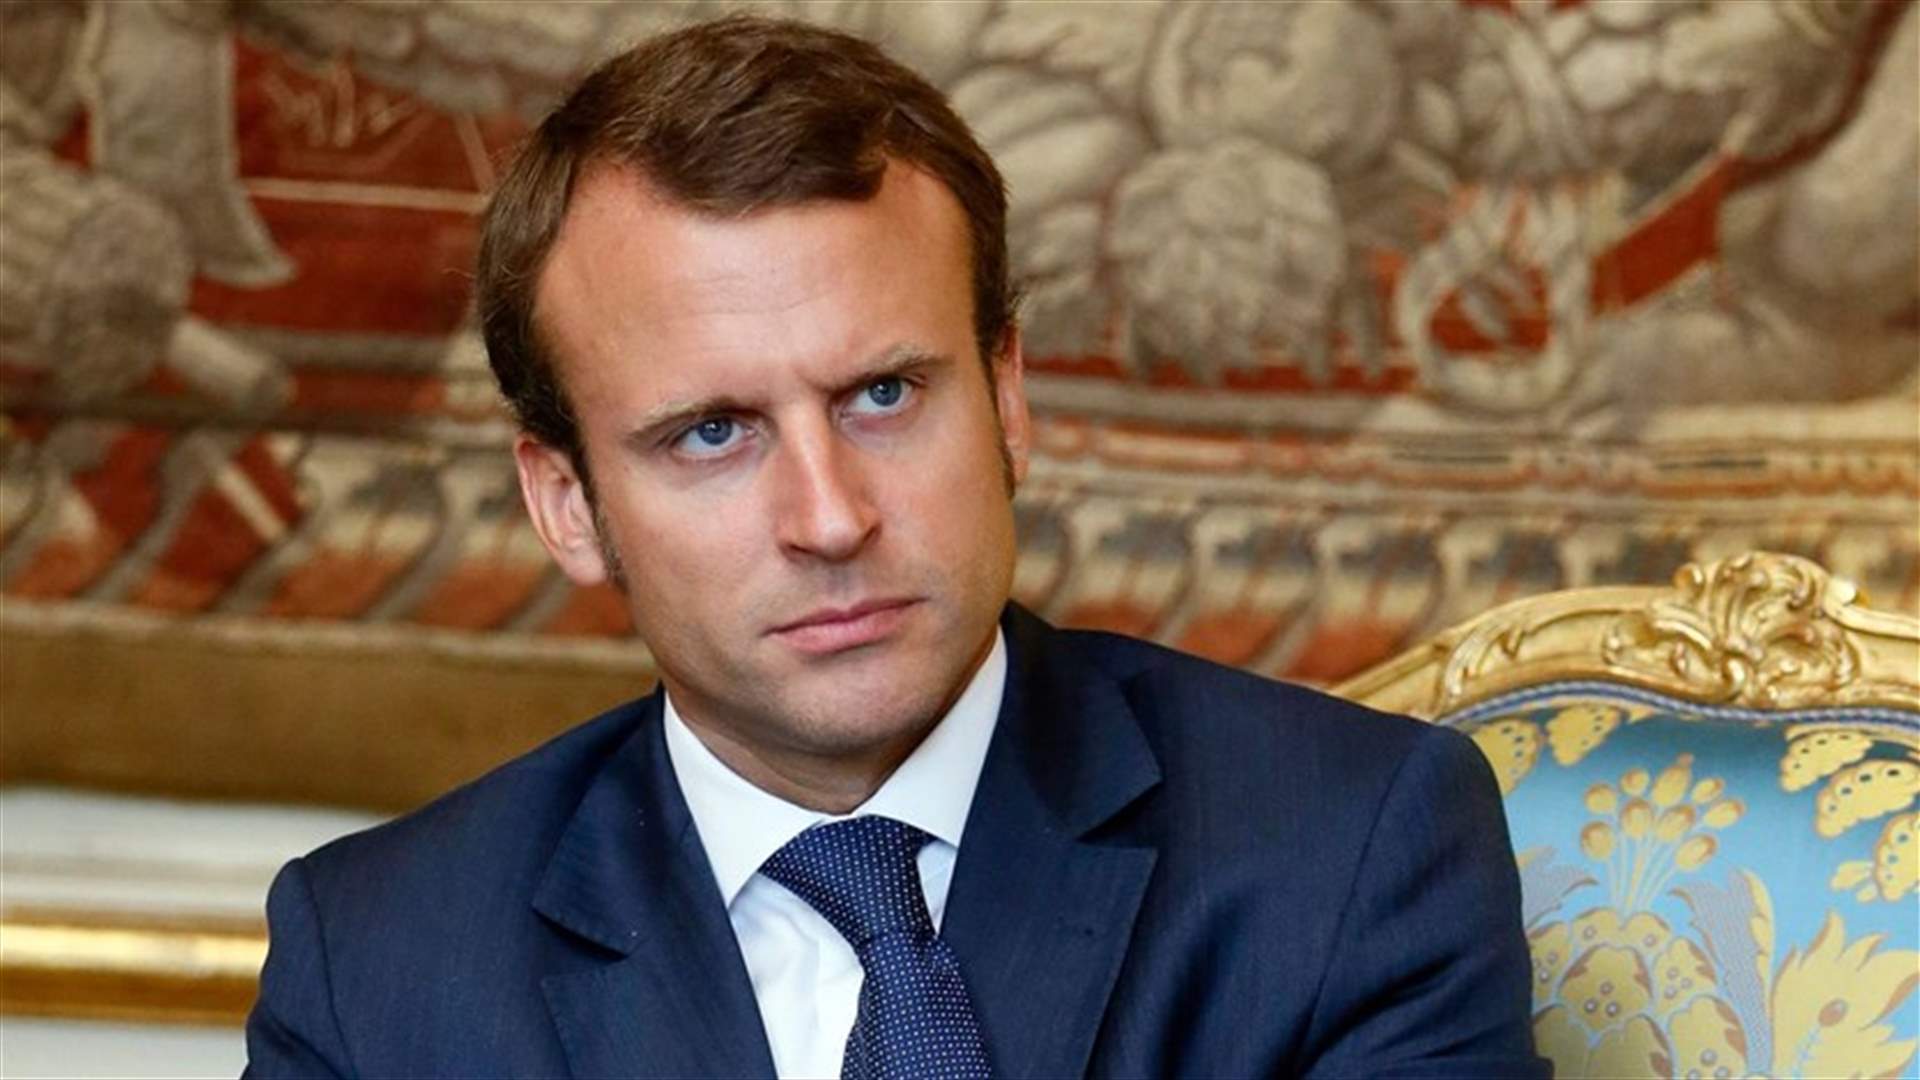 مرشح للرئاسة الفرنسية في بيروت